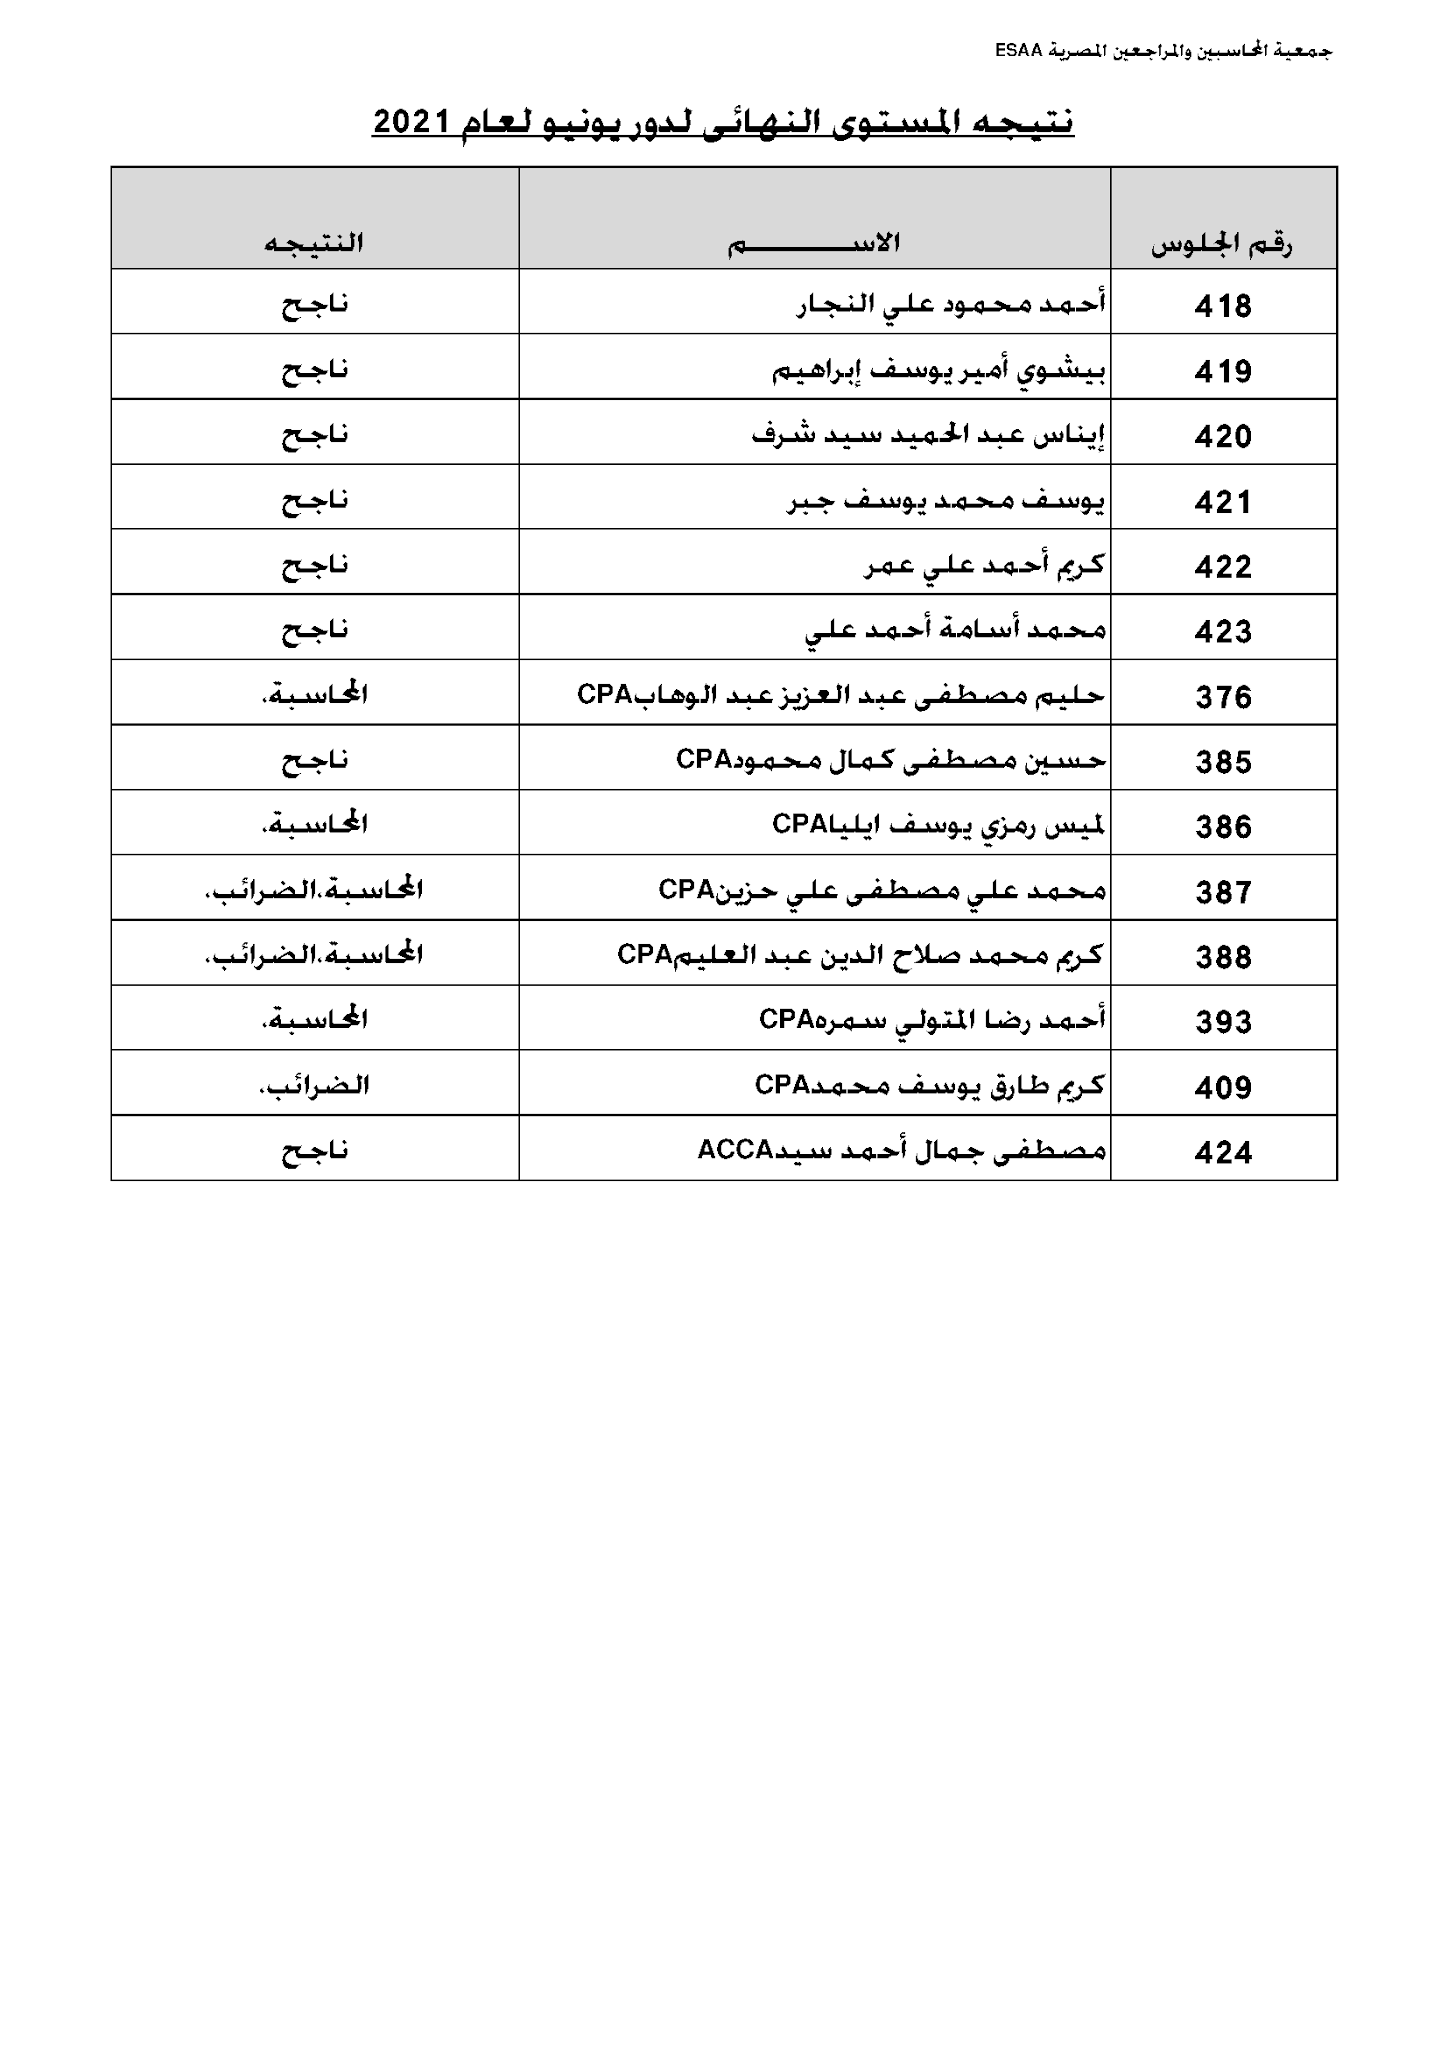 نتيجة امتحانات المستويين المتوسط والنهائي دور يونيو 2021 لجمعية المحاسبين والمراجعين المصرية